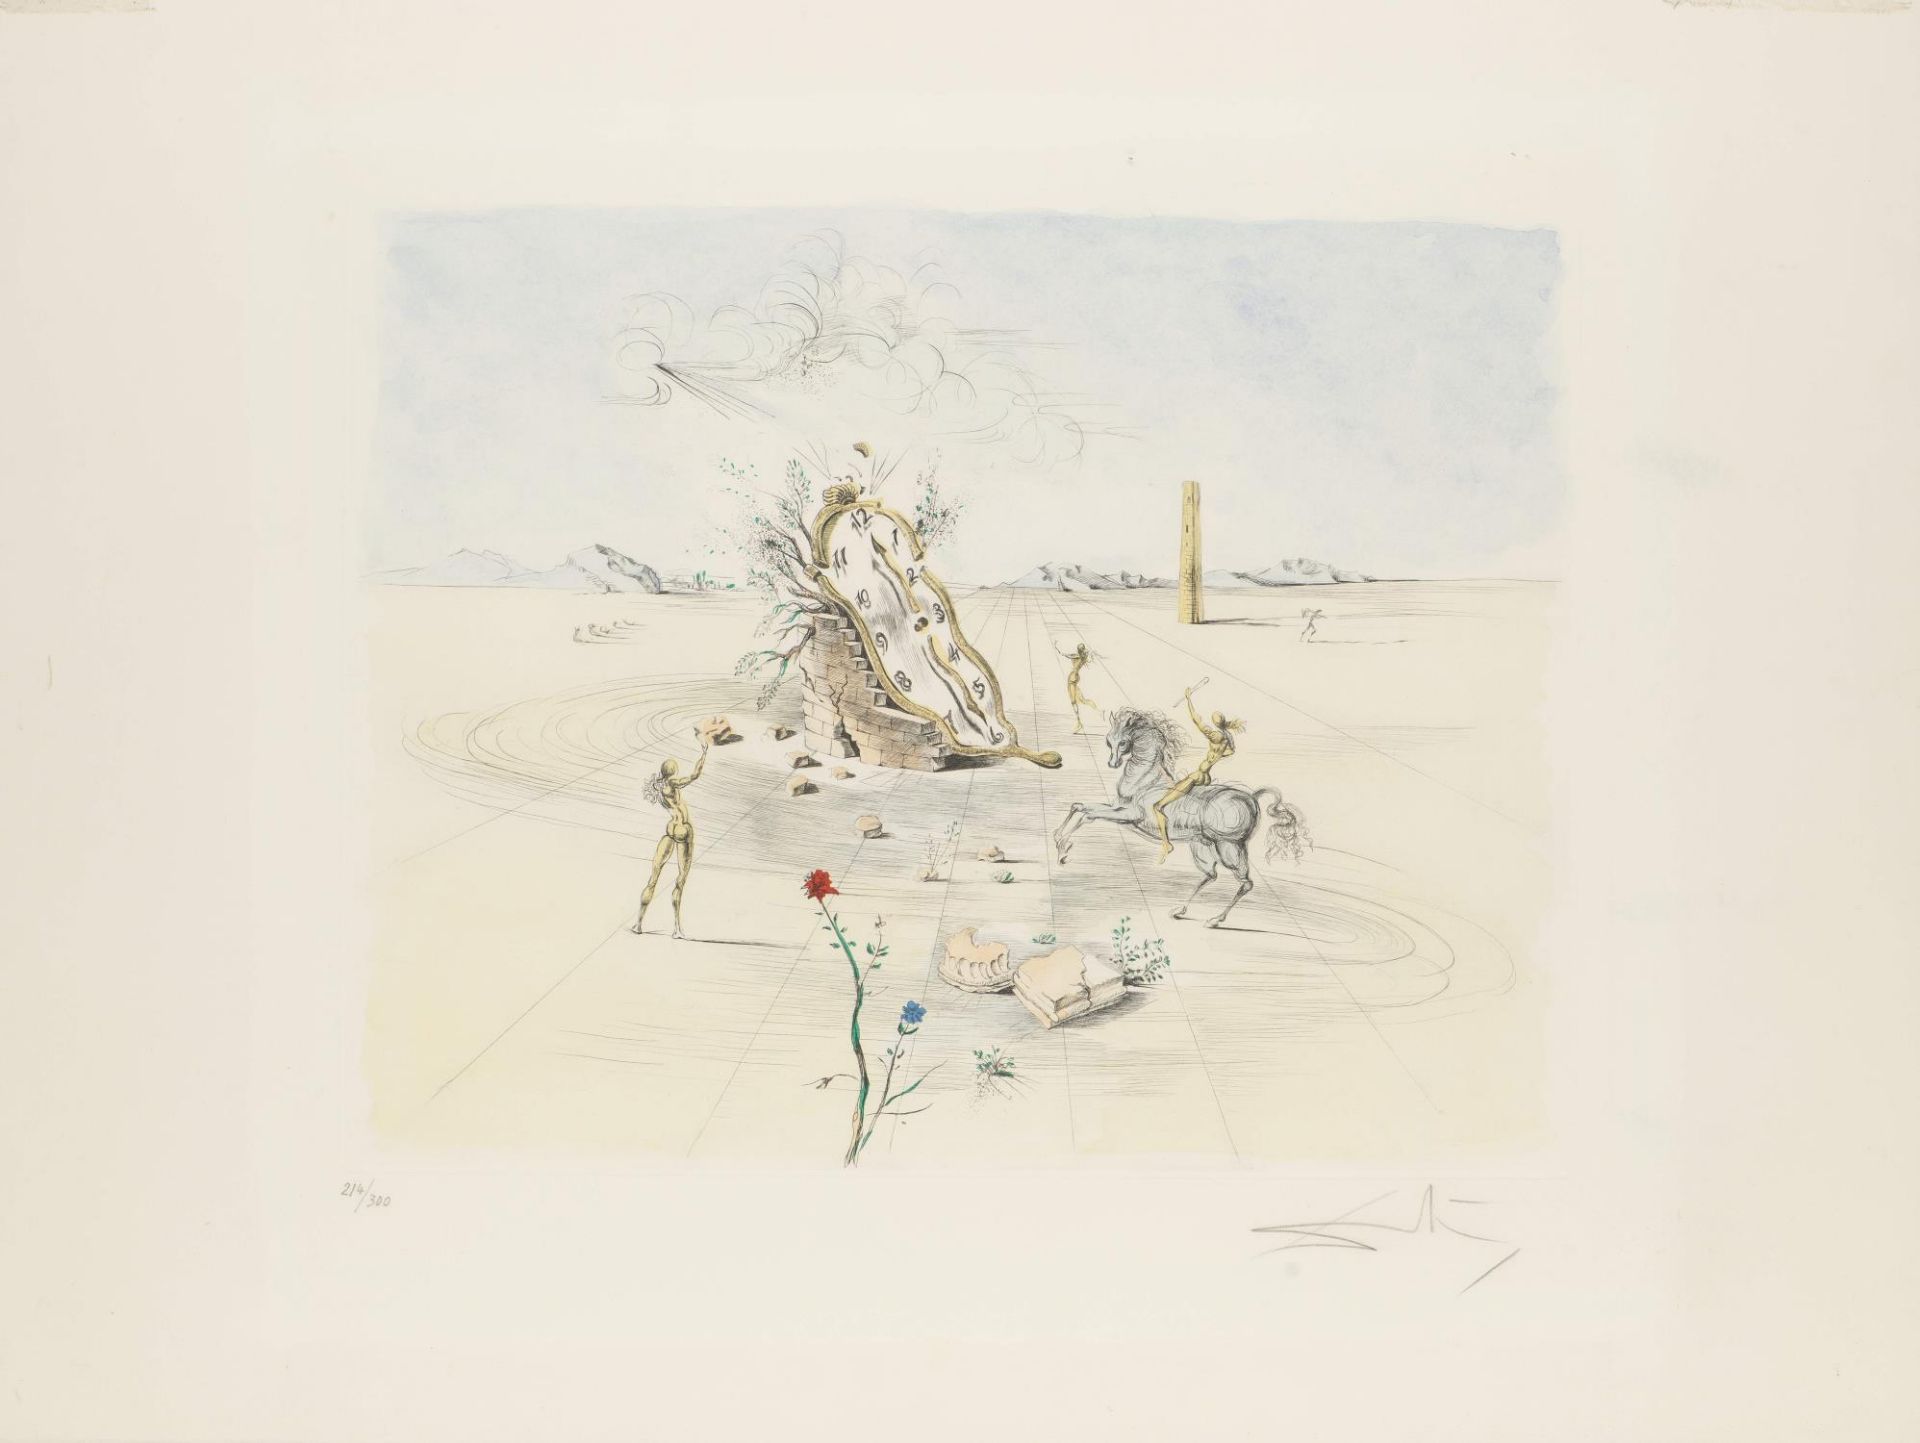 Salvador Dali (1904-1989), "Le cavalier cosmique", 1982